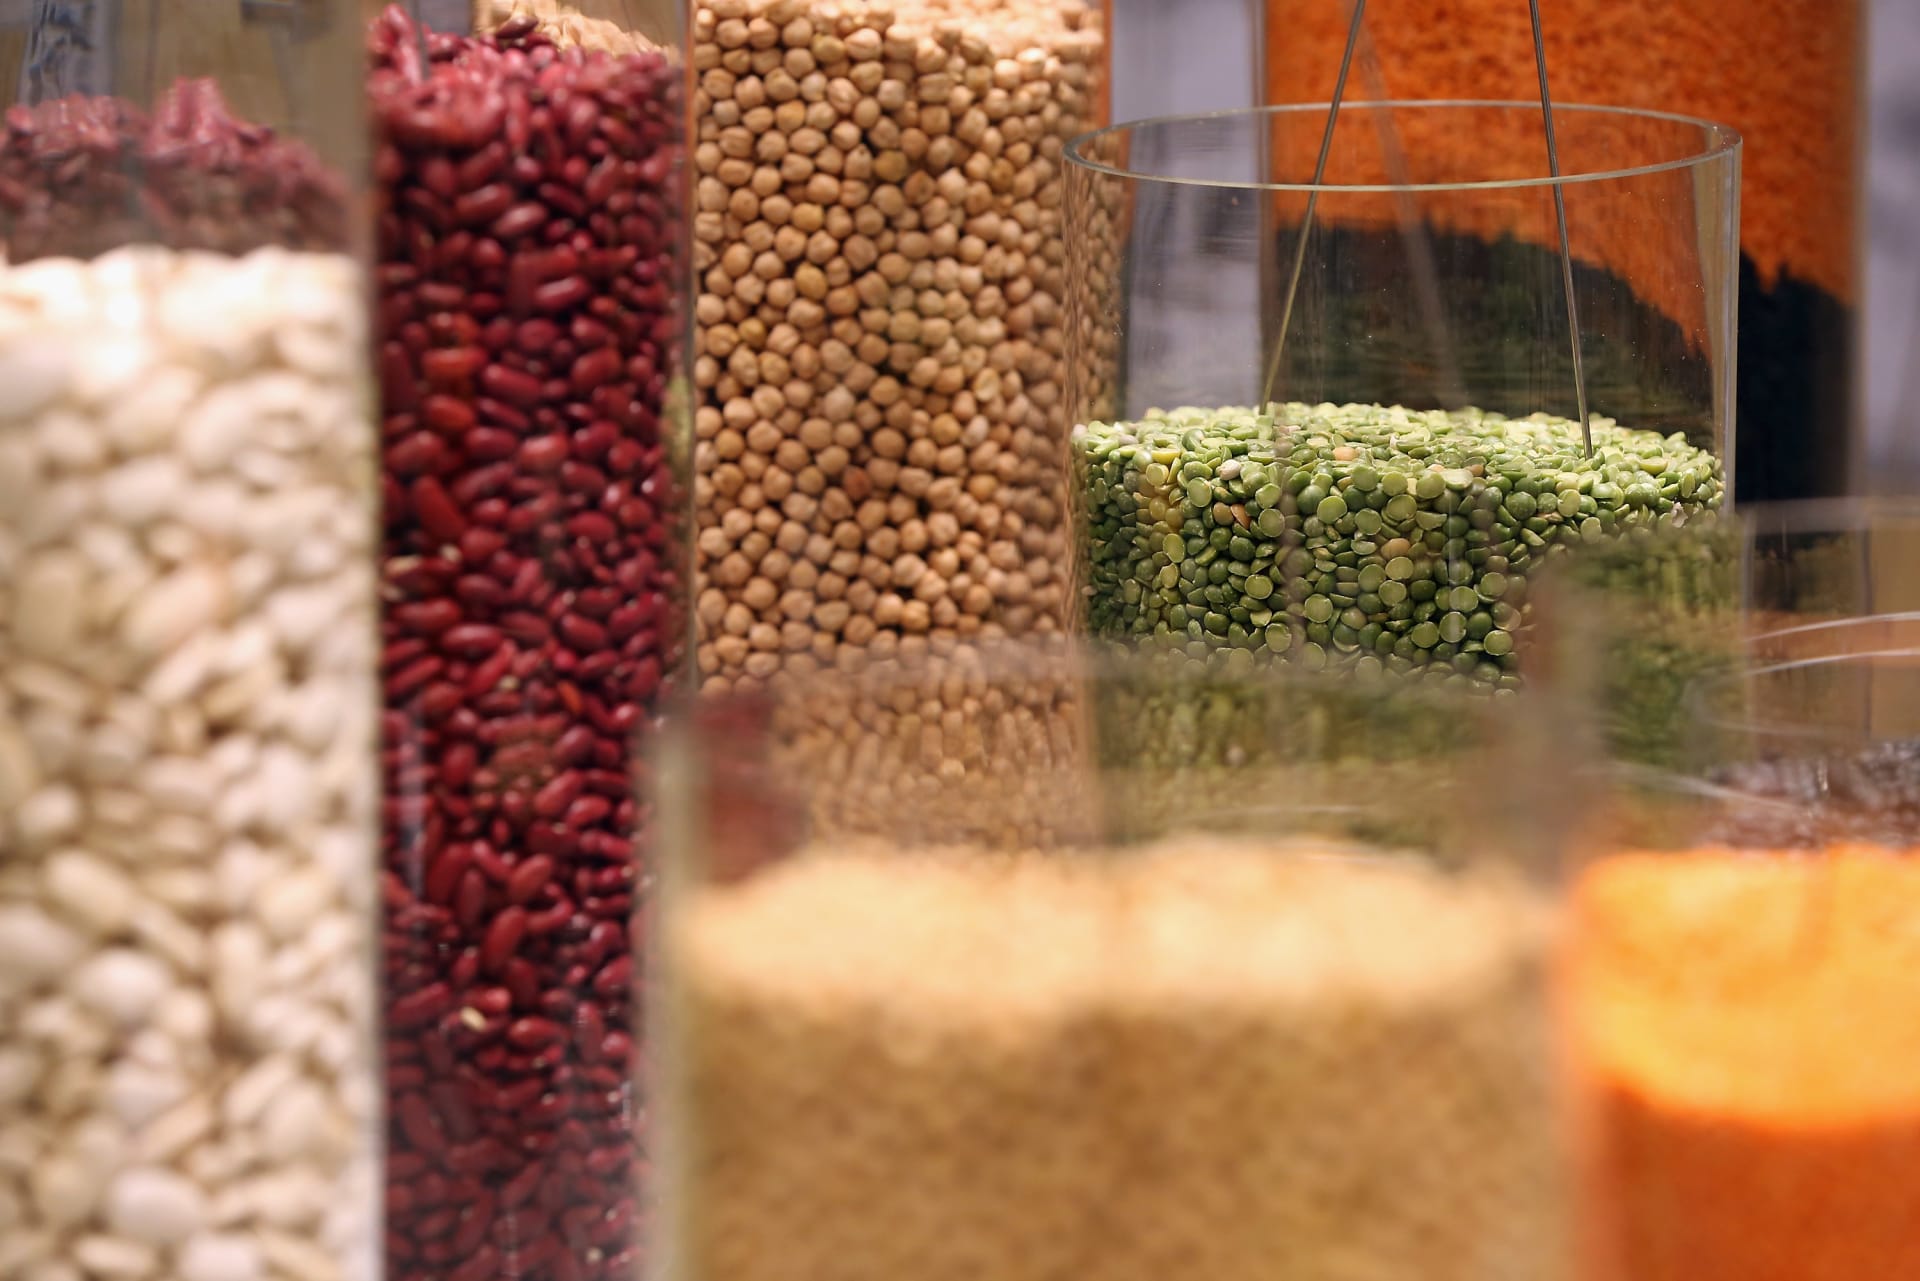 Protéines alternatives.. Une solution prometteuse pour assurer la sécurité alimentaire au Moyen-Orient